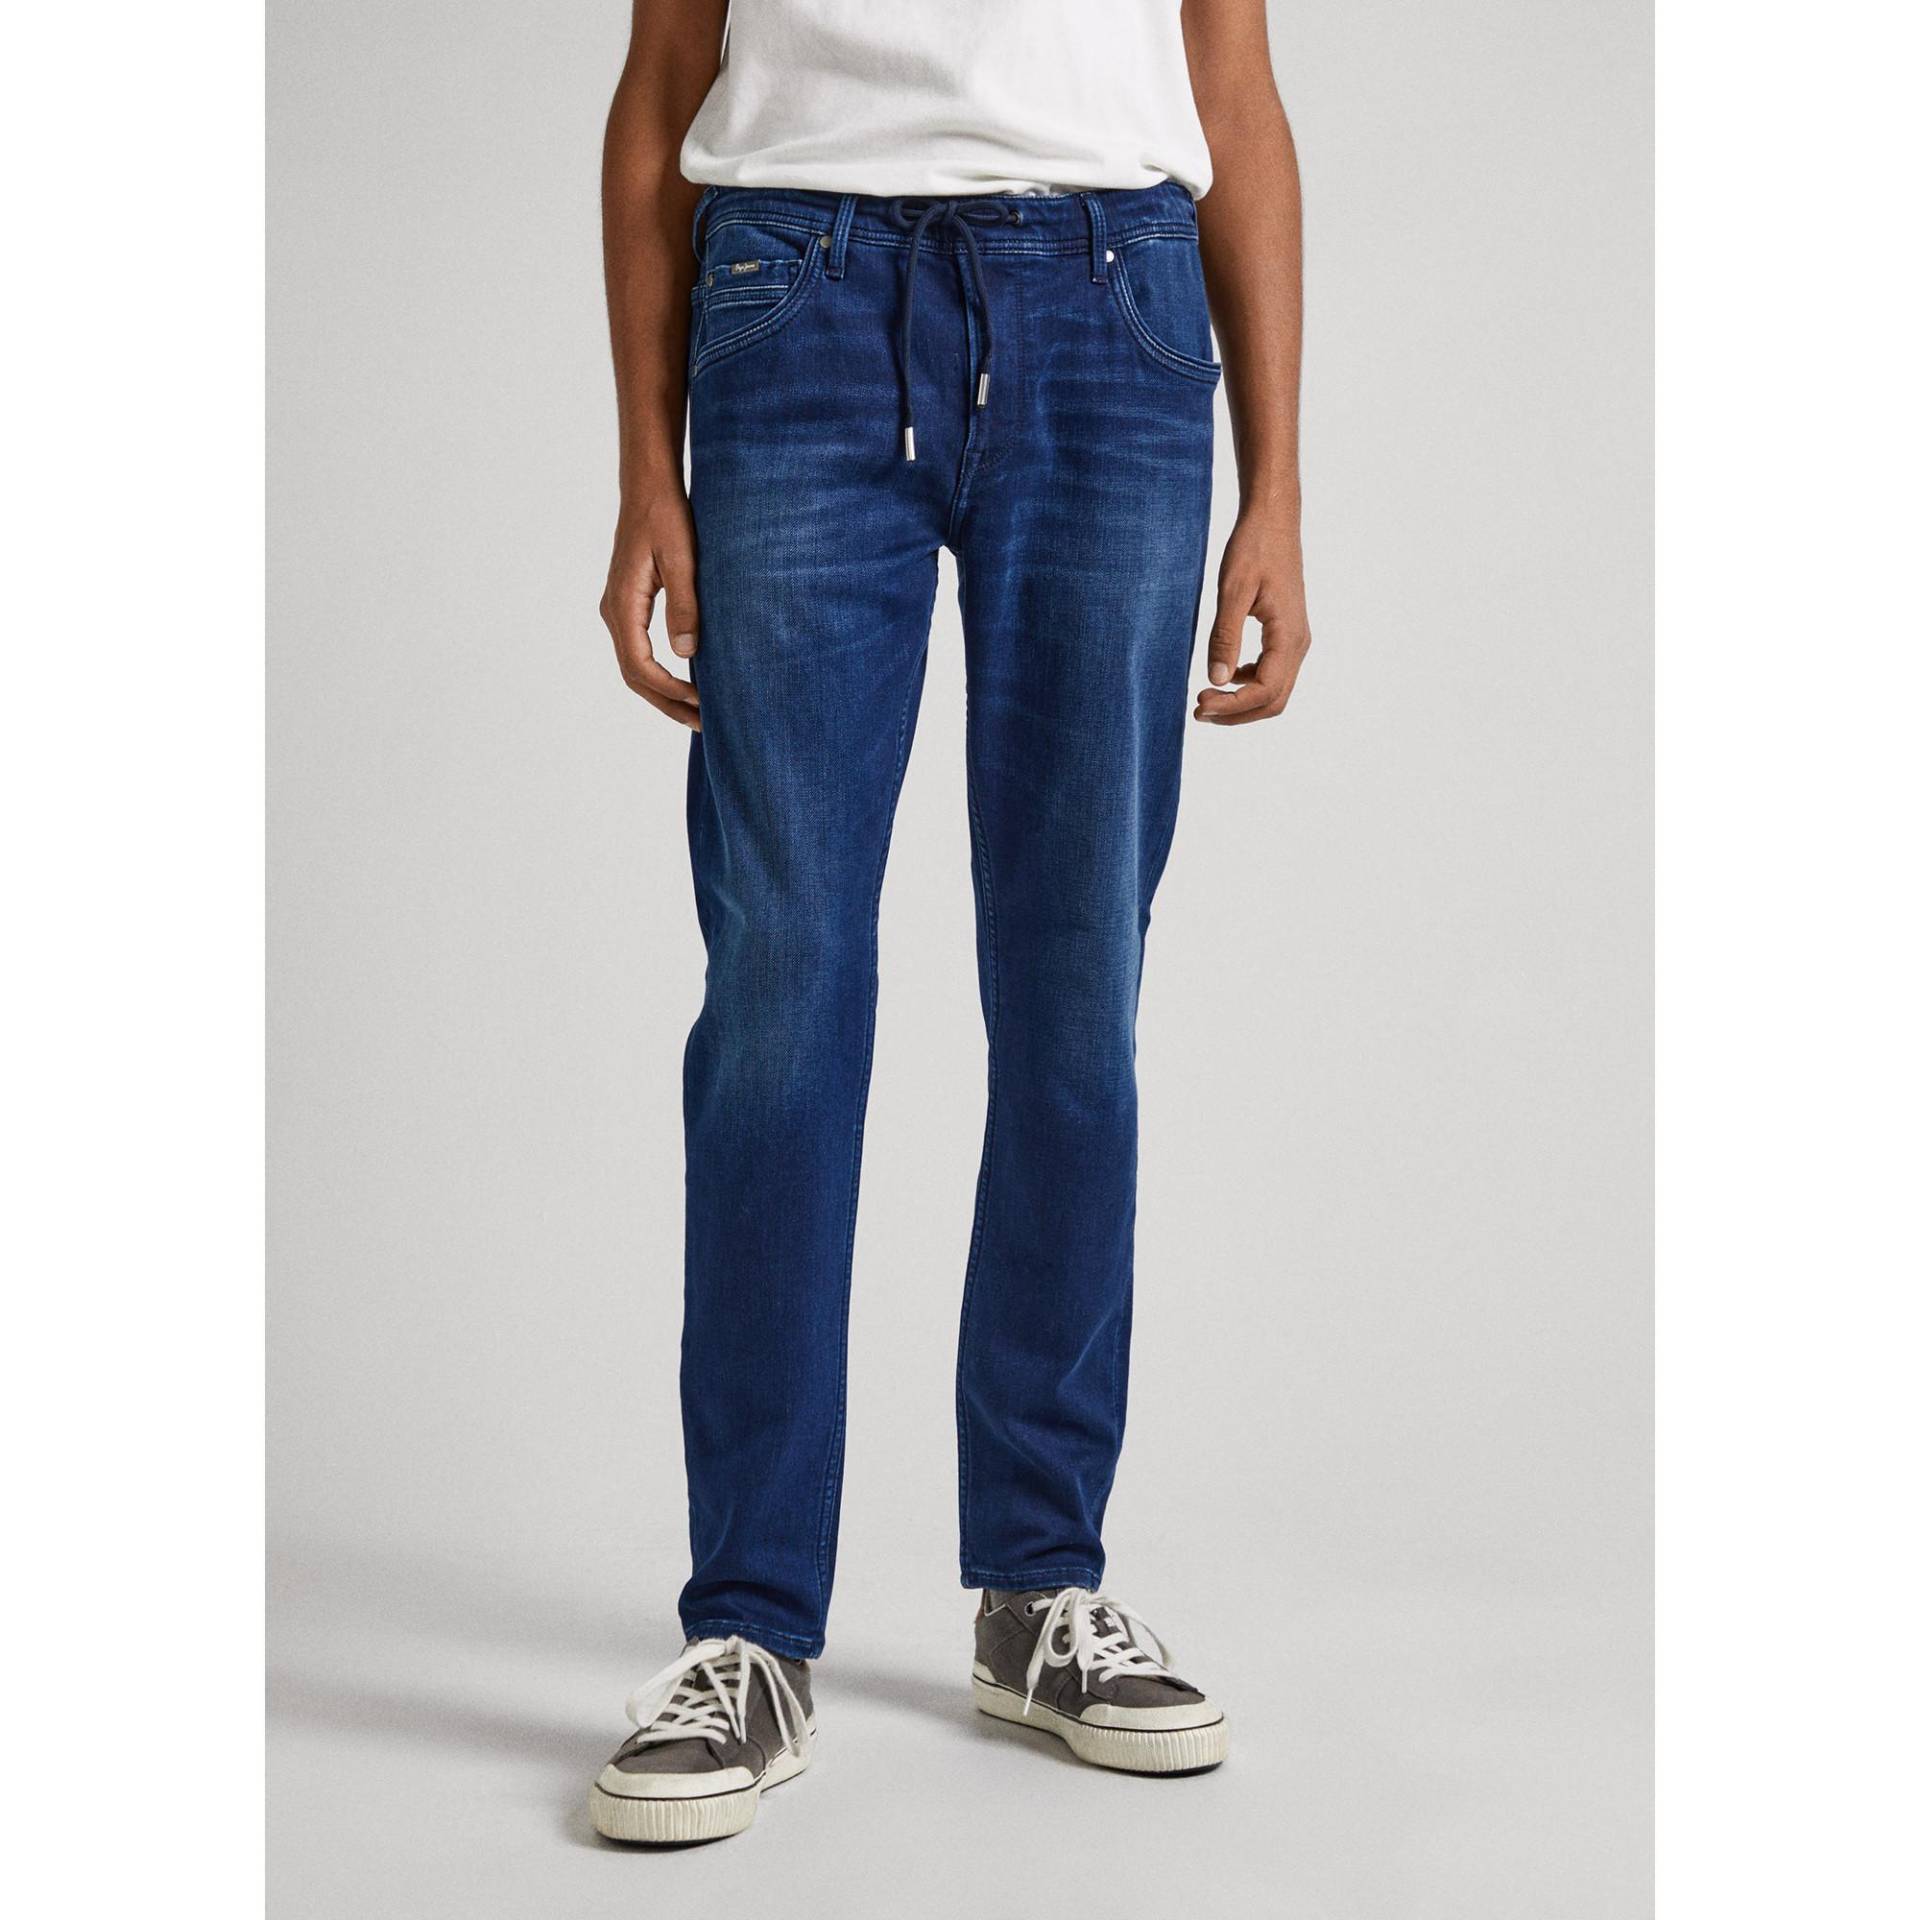 Jeans, Slim Fit Herren Blau Denim W32 von Pepe Jeans